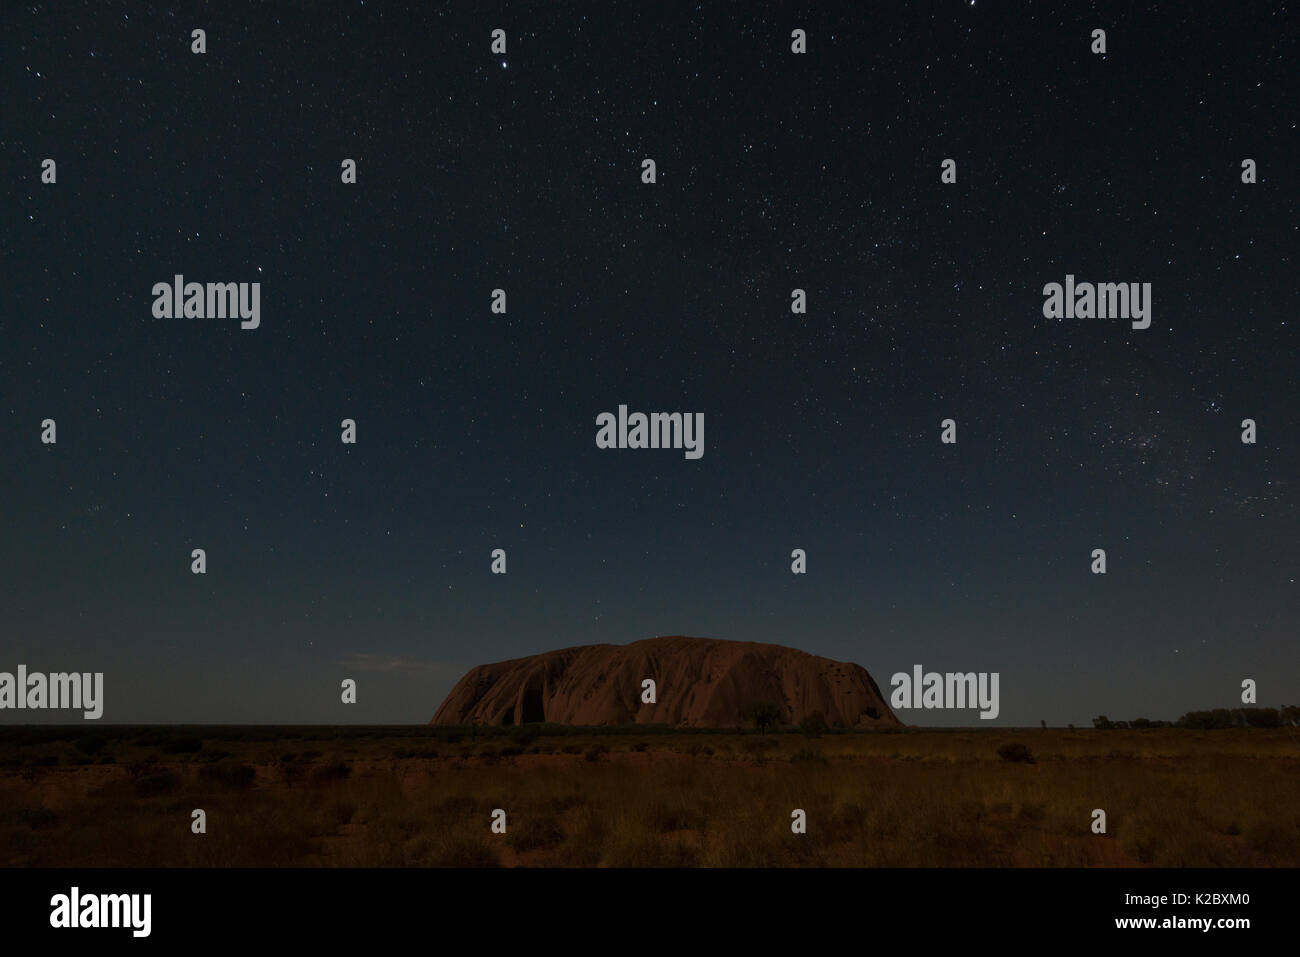 L'Uluru / Ayers Rock sur nuit étoilée, Territoire du Nord, Australie. Janvier 2013 Banque D'Images